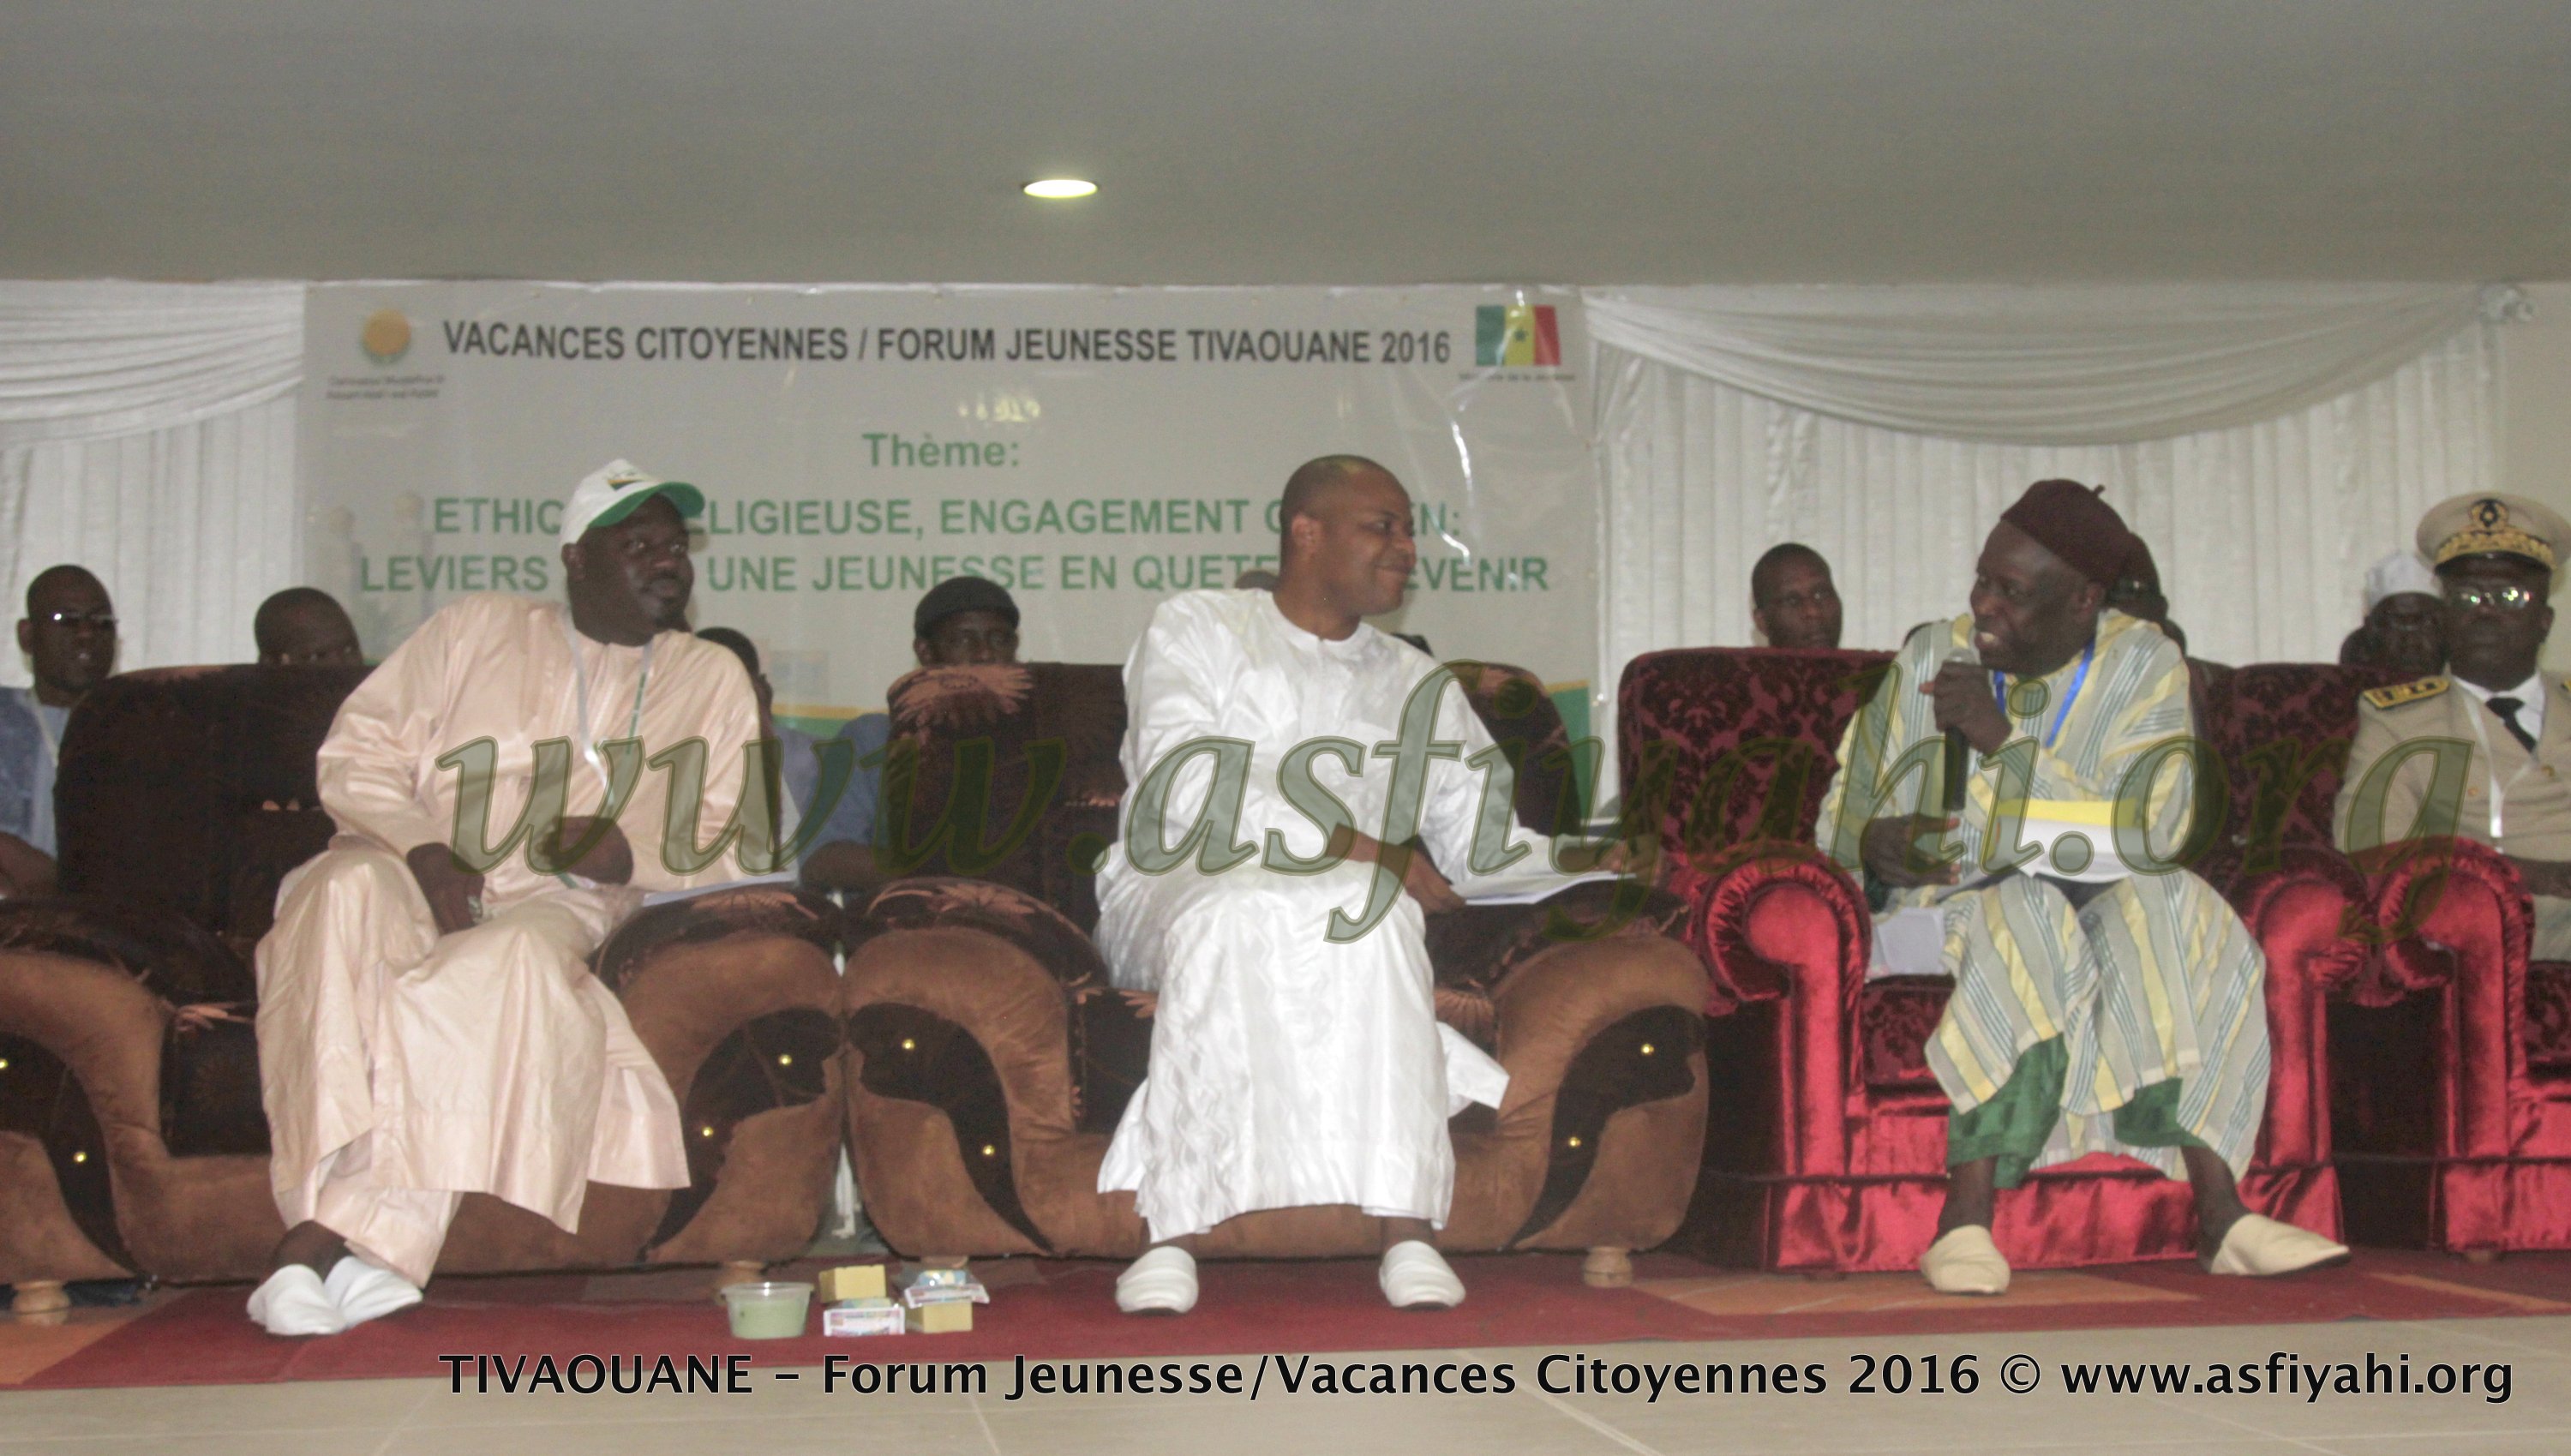 PHOTOS - 17 AOÛT 2016 À TIVAOUANE - Les Images du Forum TIVAOUANE - Forum Jeunesse/Vacances Citoyennes 2016, présidé par le Ministre Mame Mbaye Niang